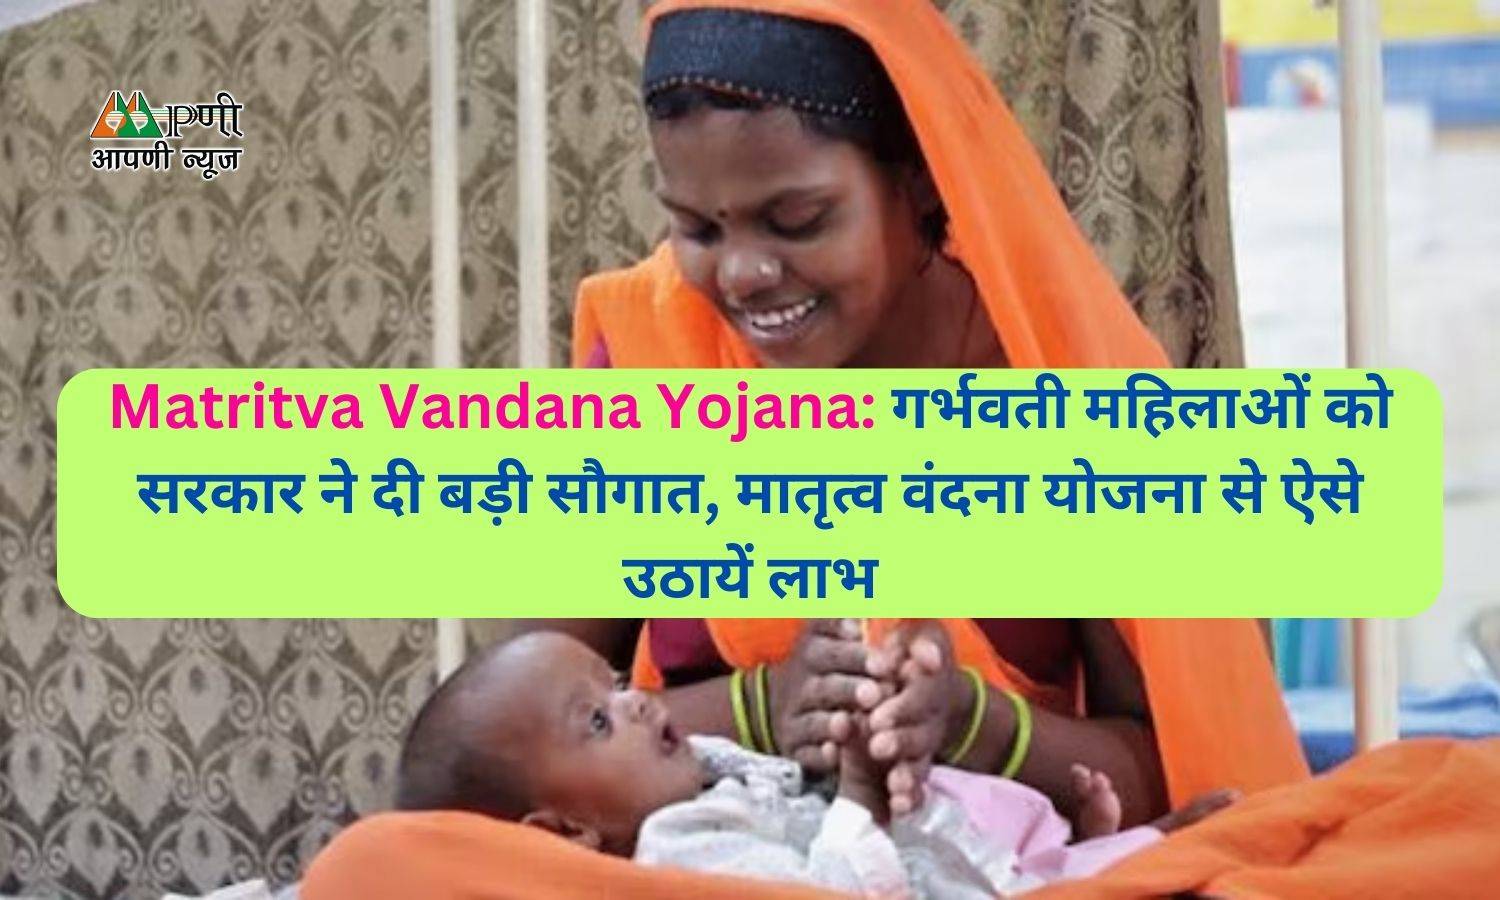 Matritva Vandana Yojana: गर्भवती महिलाओं को सरकार ने दी बड़ी सौगात, मातृत्व वंदना योजना से ऐसे उठायें लाभ